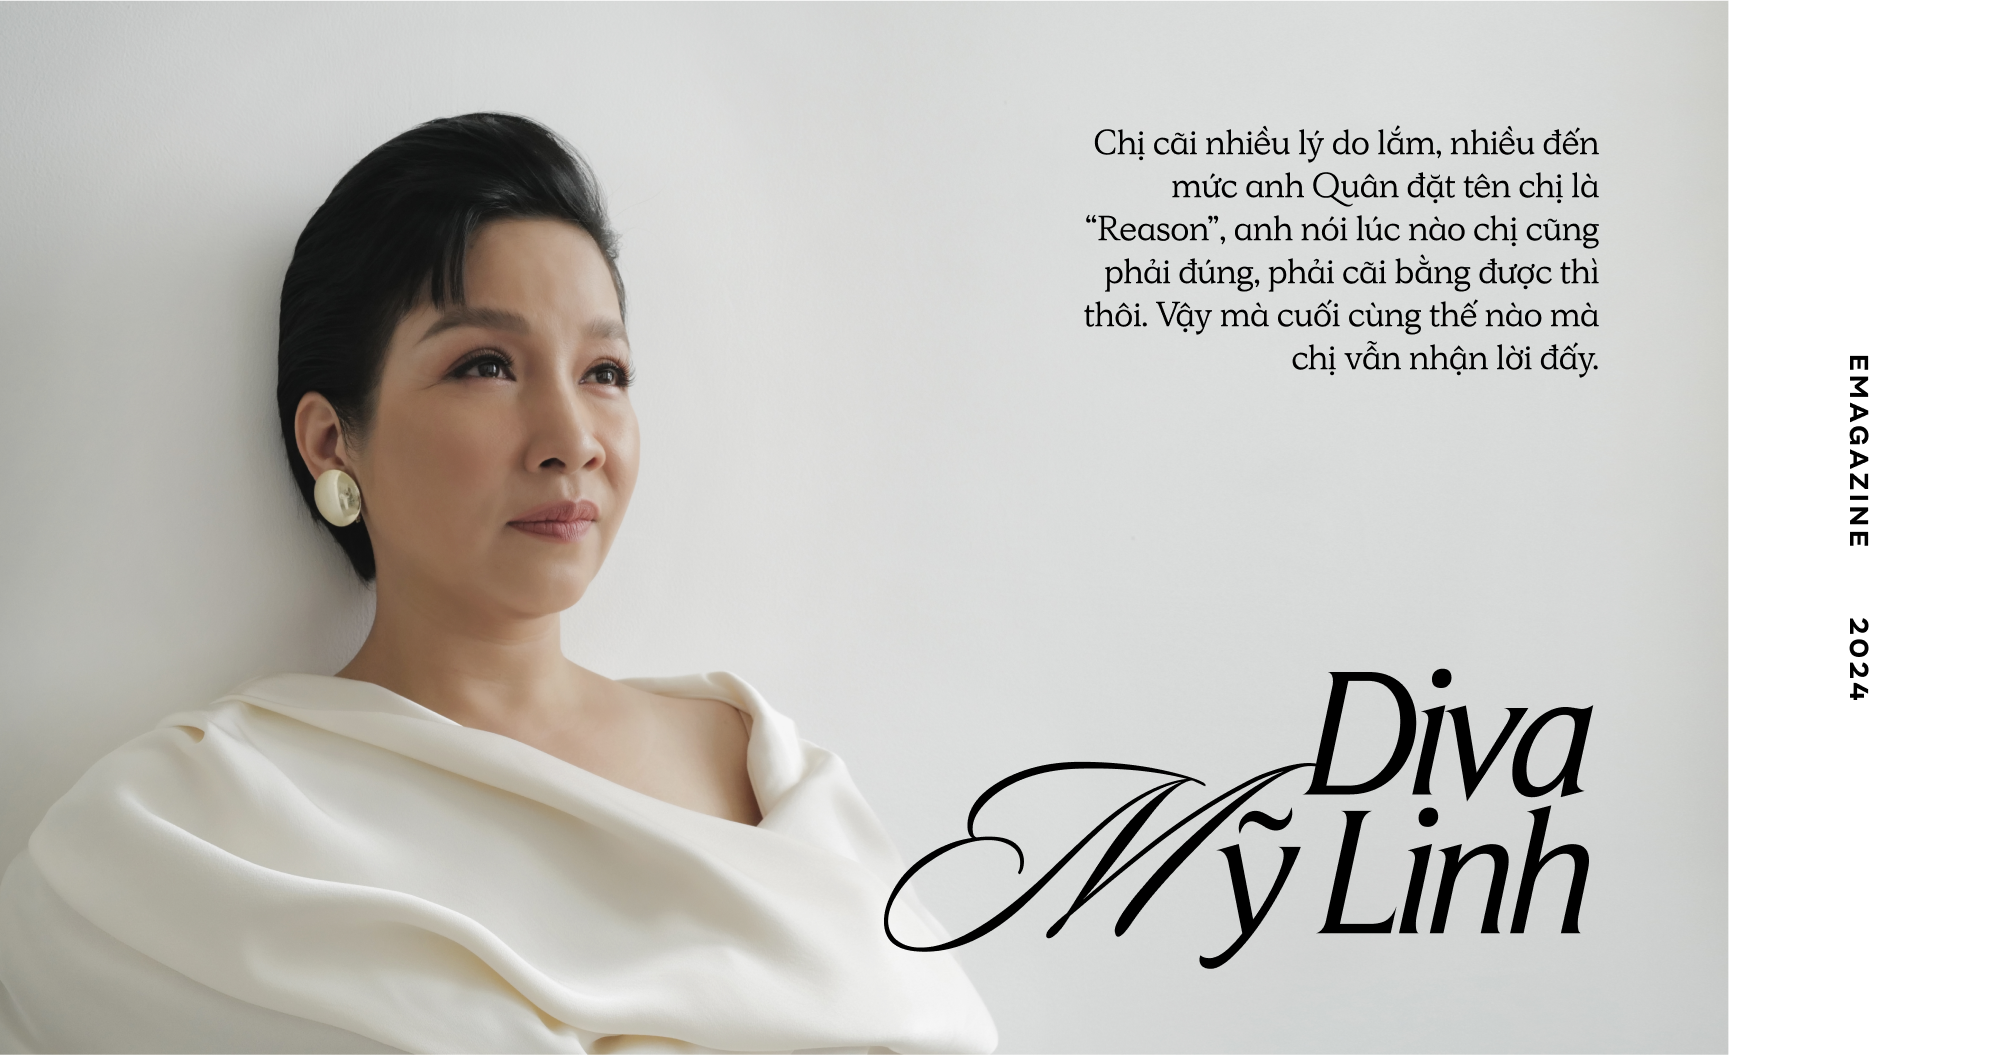 Diva Mỹ Linh: Tôi tìm đủ lý do để không tham gia Chị đẹp, đến mức anh Quân đặt cho tôi biệt danh là “Reason” - Ảnh 3.